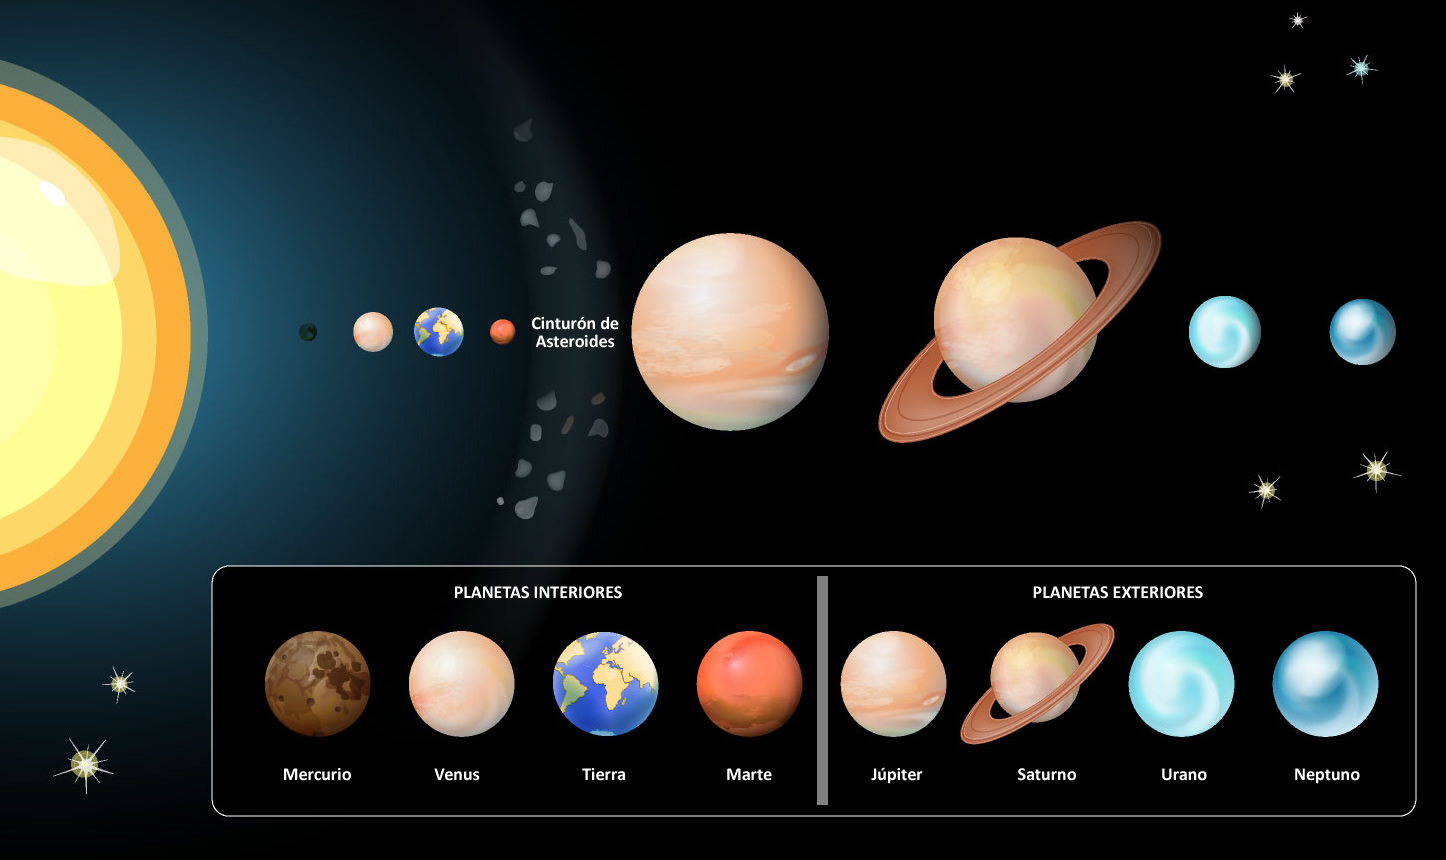 72 Sample Planetas exteriores caracteristicas 